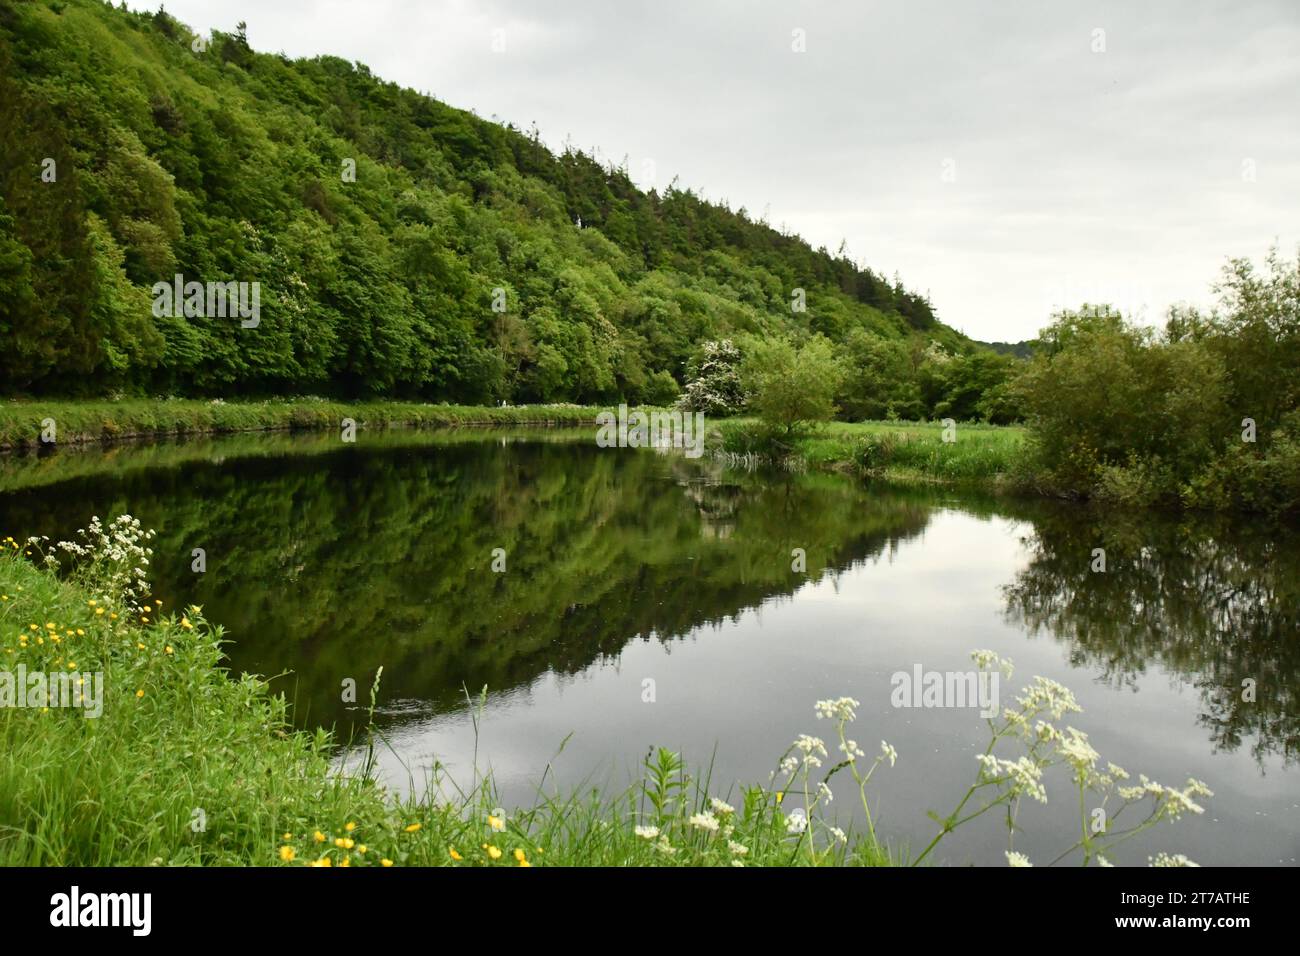 River Barrow, Graiguenamanagh, County Kilkenny, Ireland Stock Photo